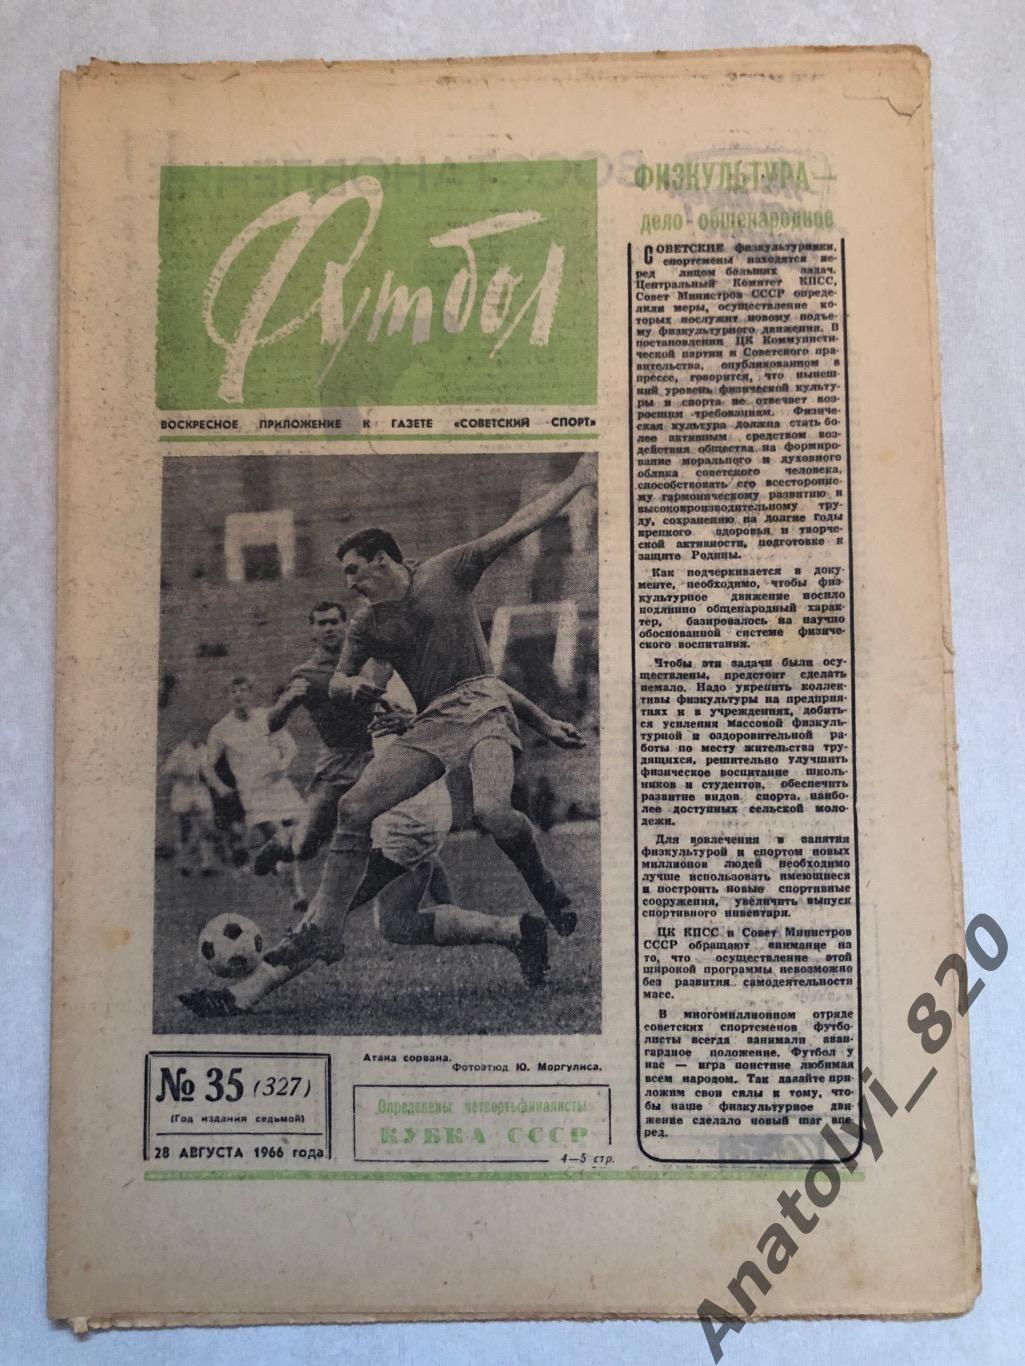 Еженедельник футбол номер 35 от 28.08.1966